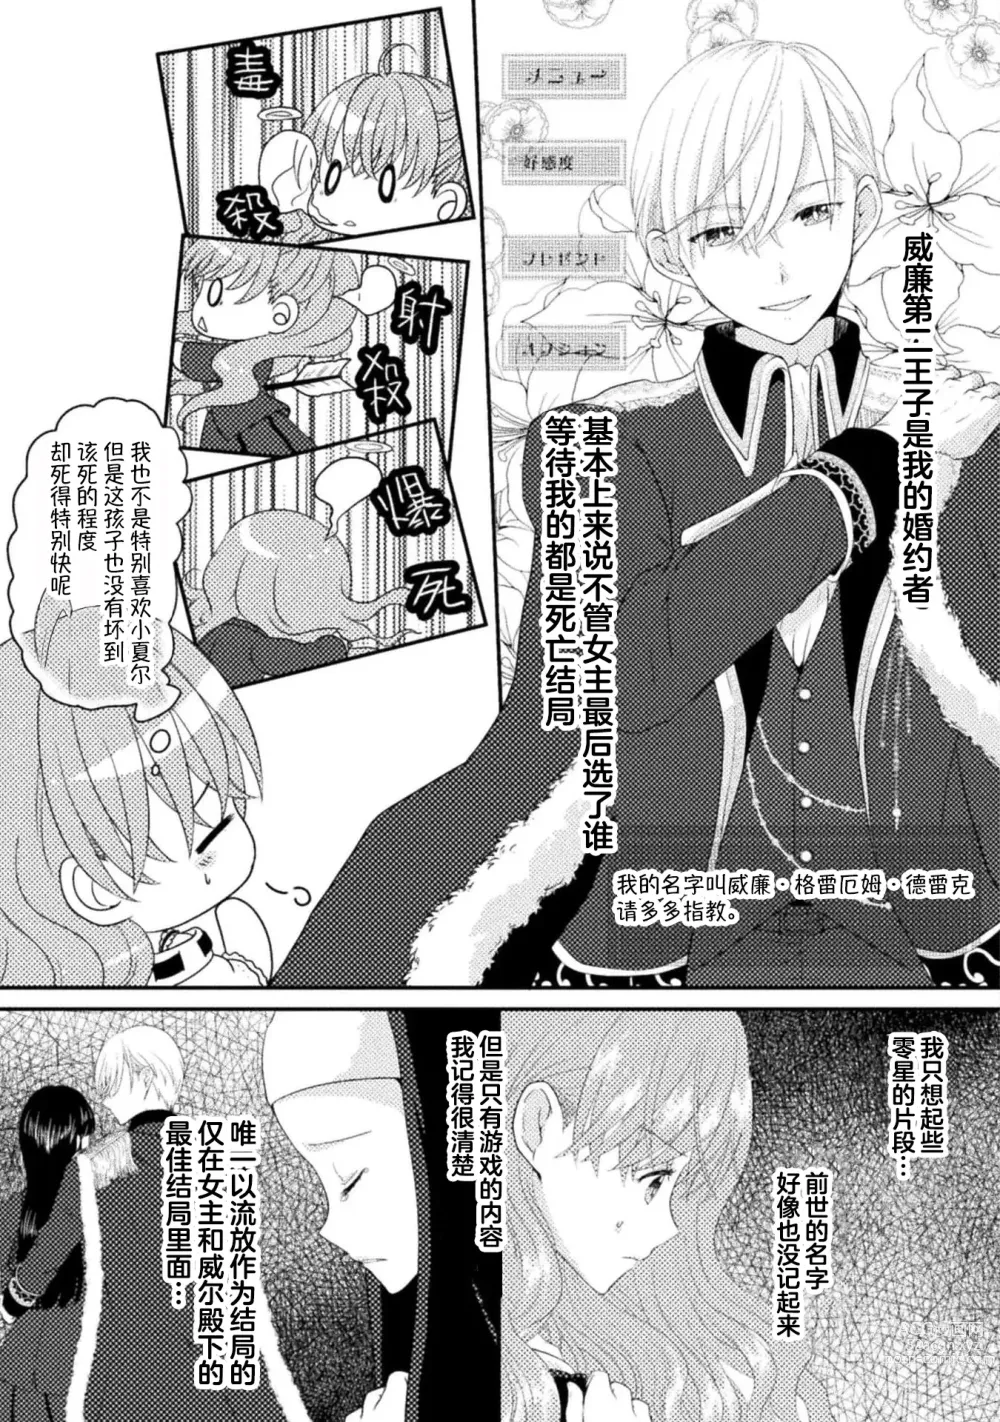 Page 6 of manga 恶役千金被腹黑王子执着爱、淫乱惩罚逃不掉 1-2